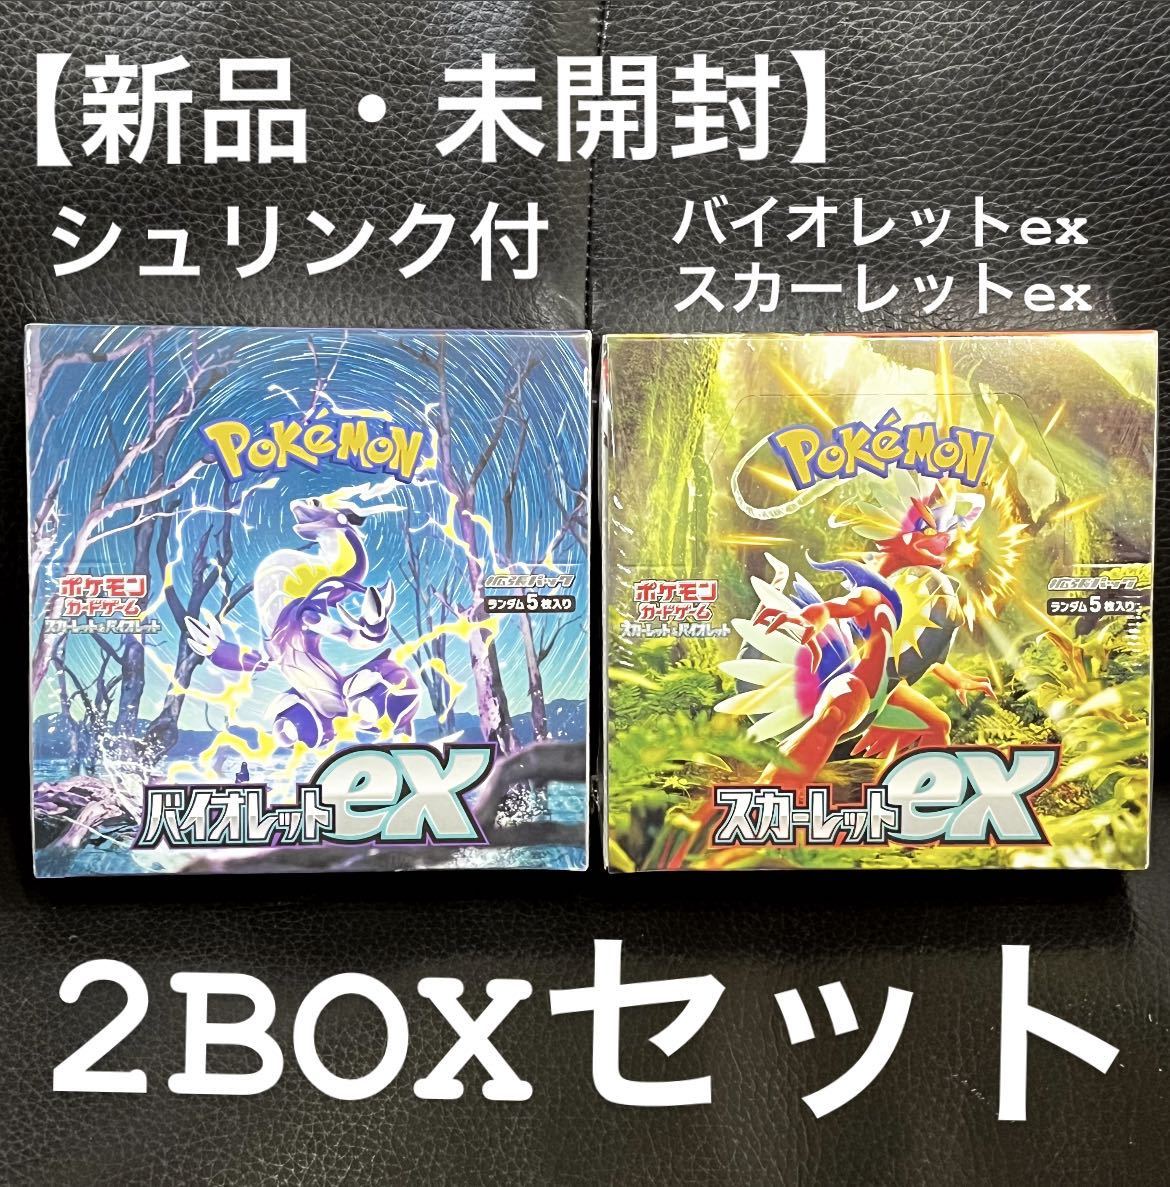 スカーレットex  バイオレットex  各3BOX 計6BOX シュリンク付き ポケモンカードゲーム 大特価SALE